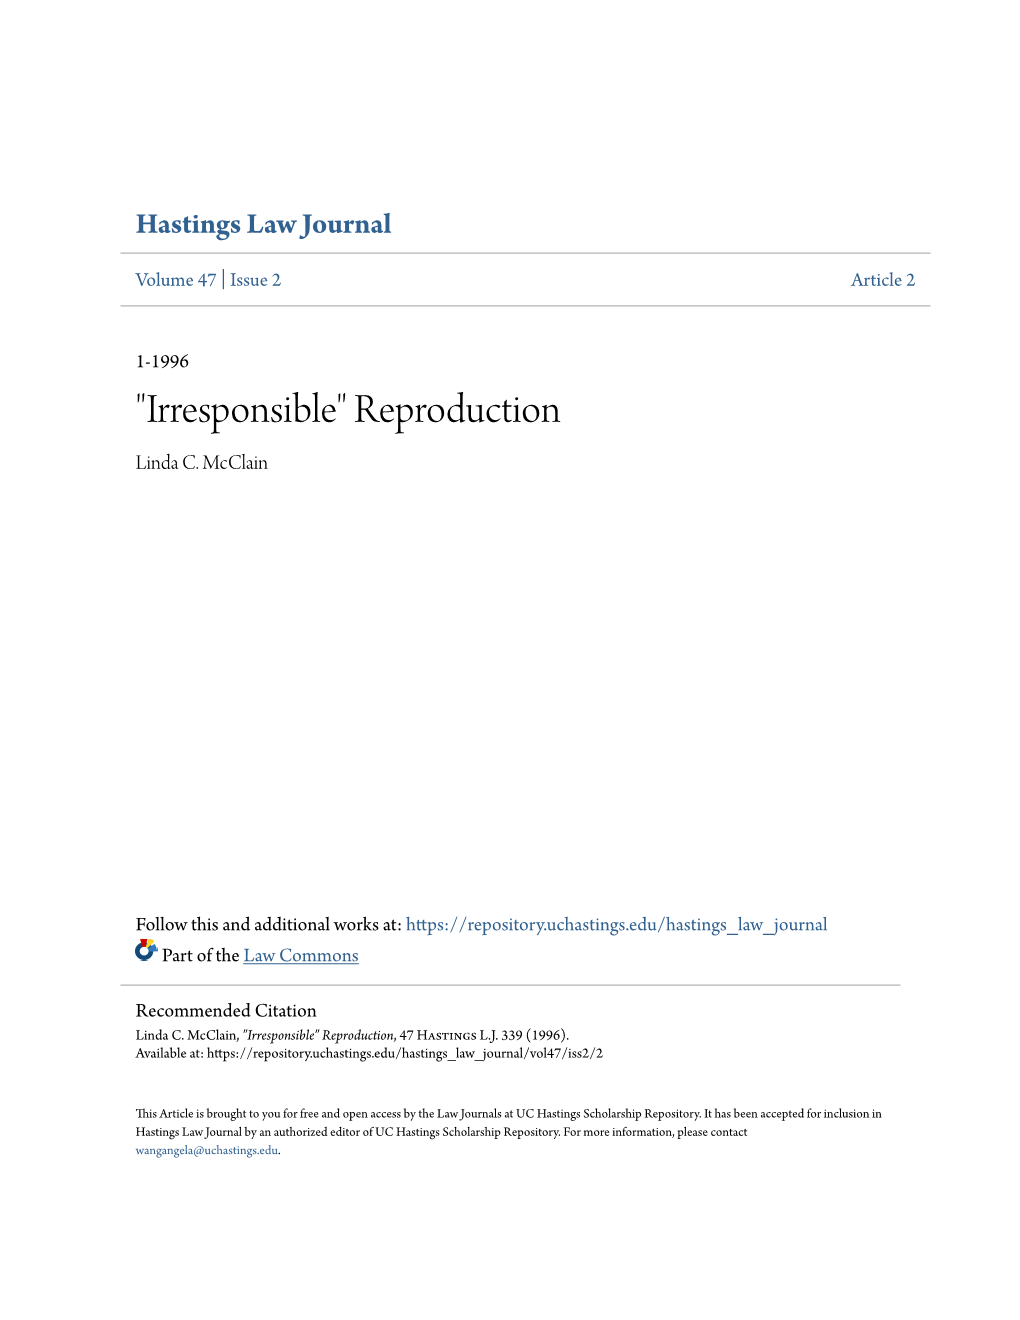 "Irresponsible" Reproduction Linda C